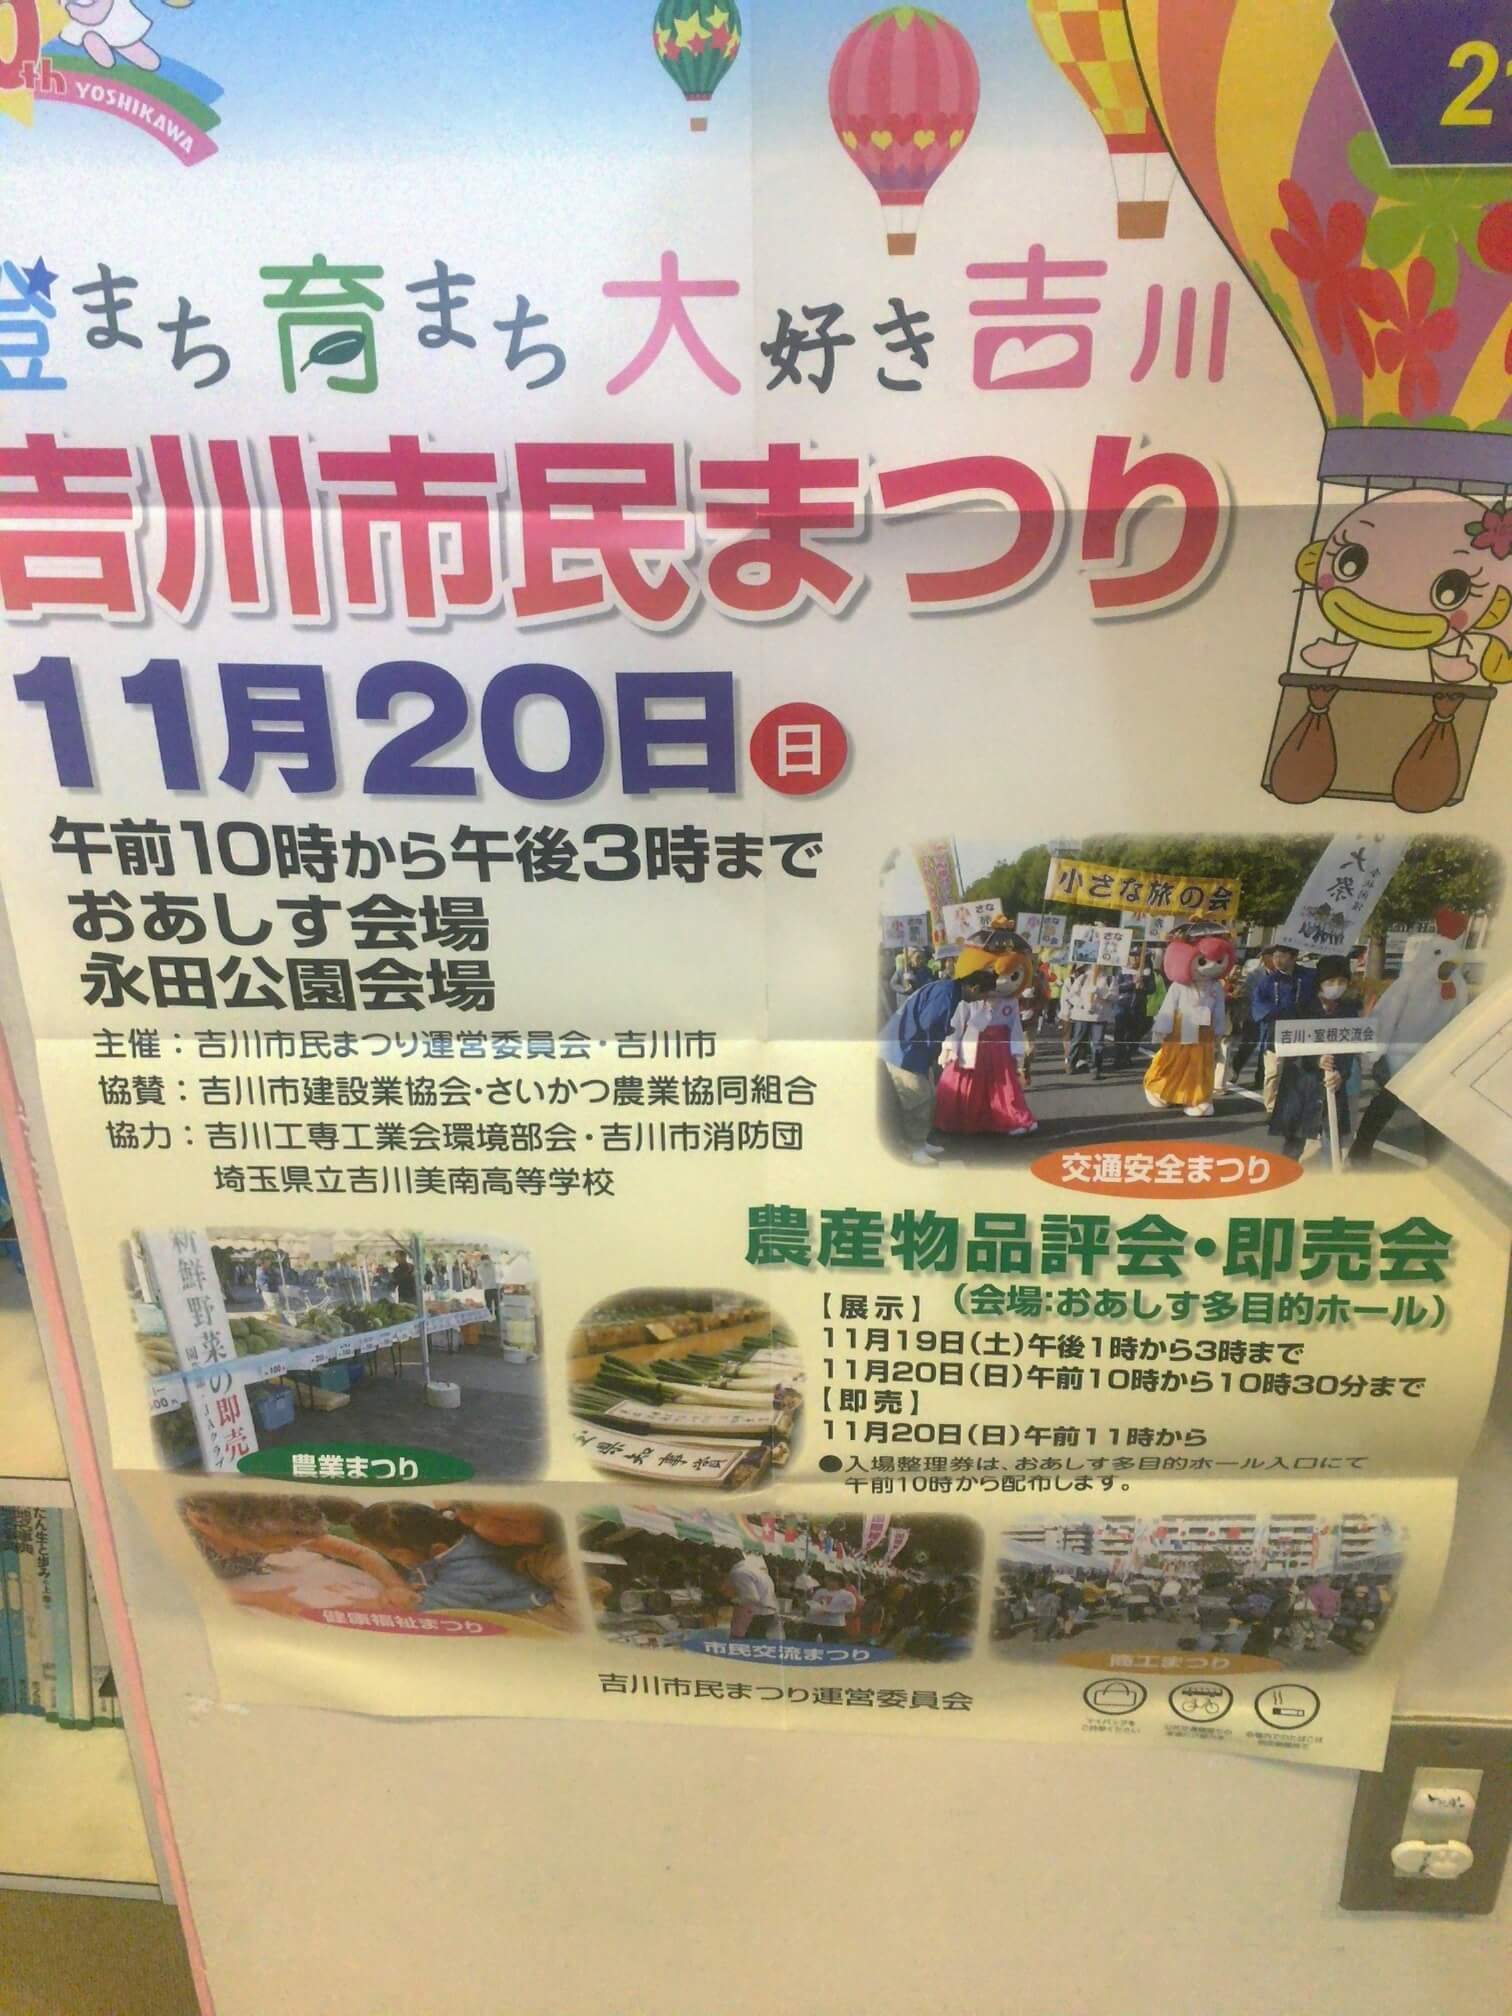 吉川市で、ワンダーまつりが10月16日、市民まつりが11月20日に開催されるようです